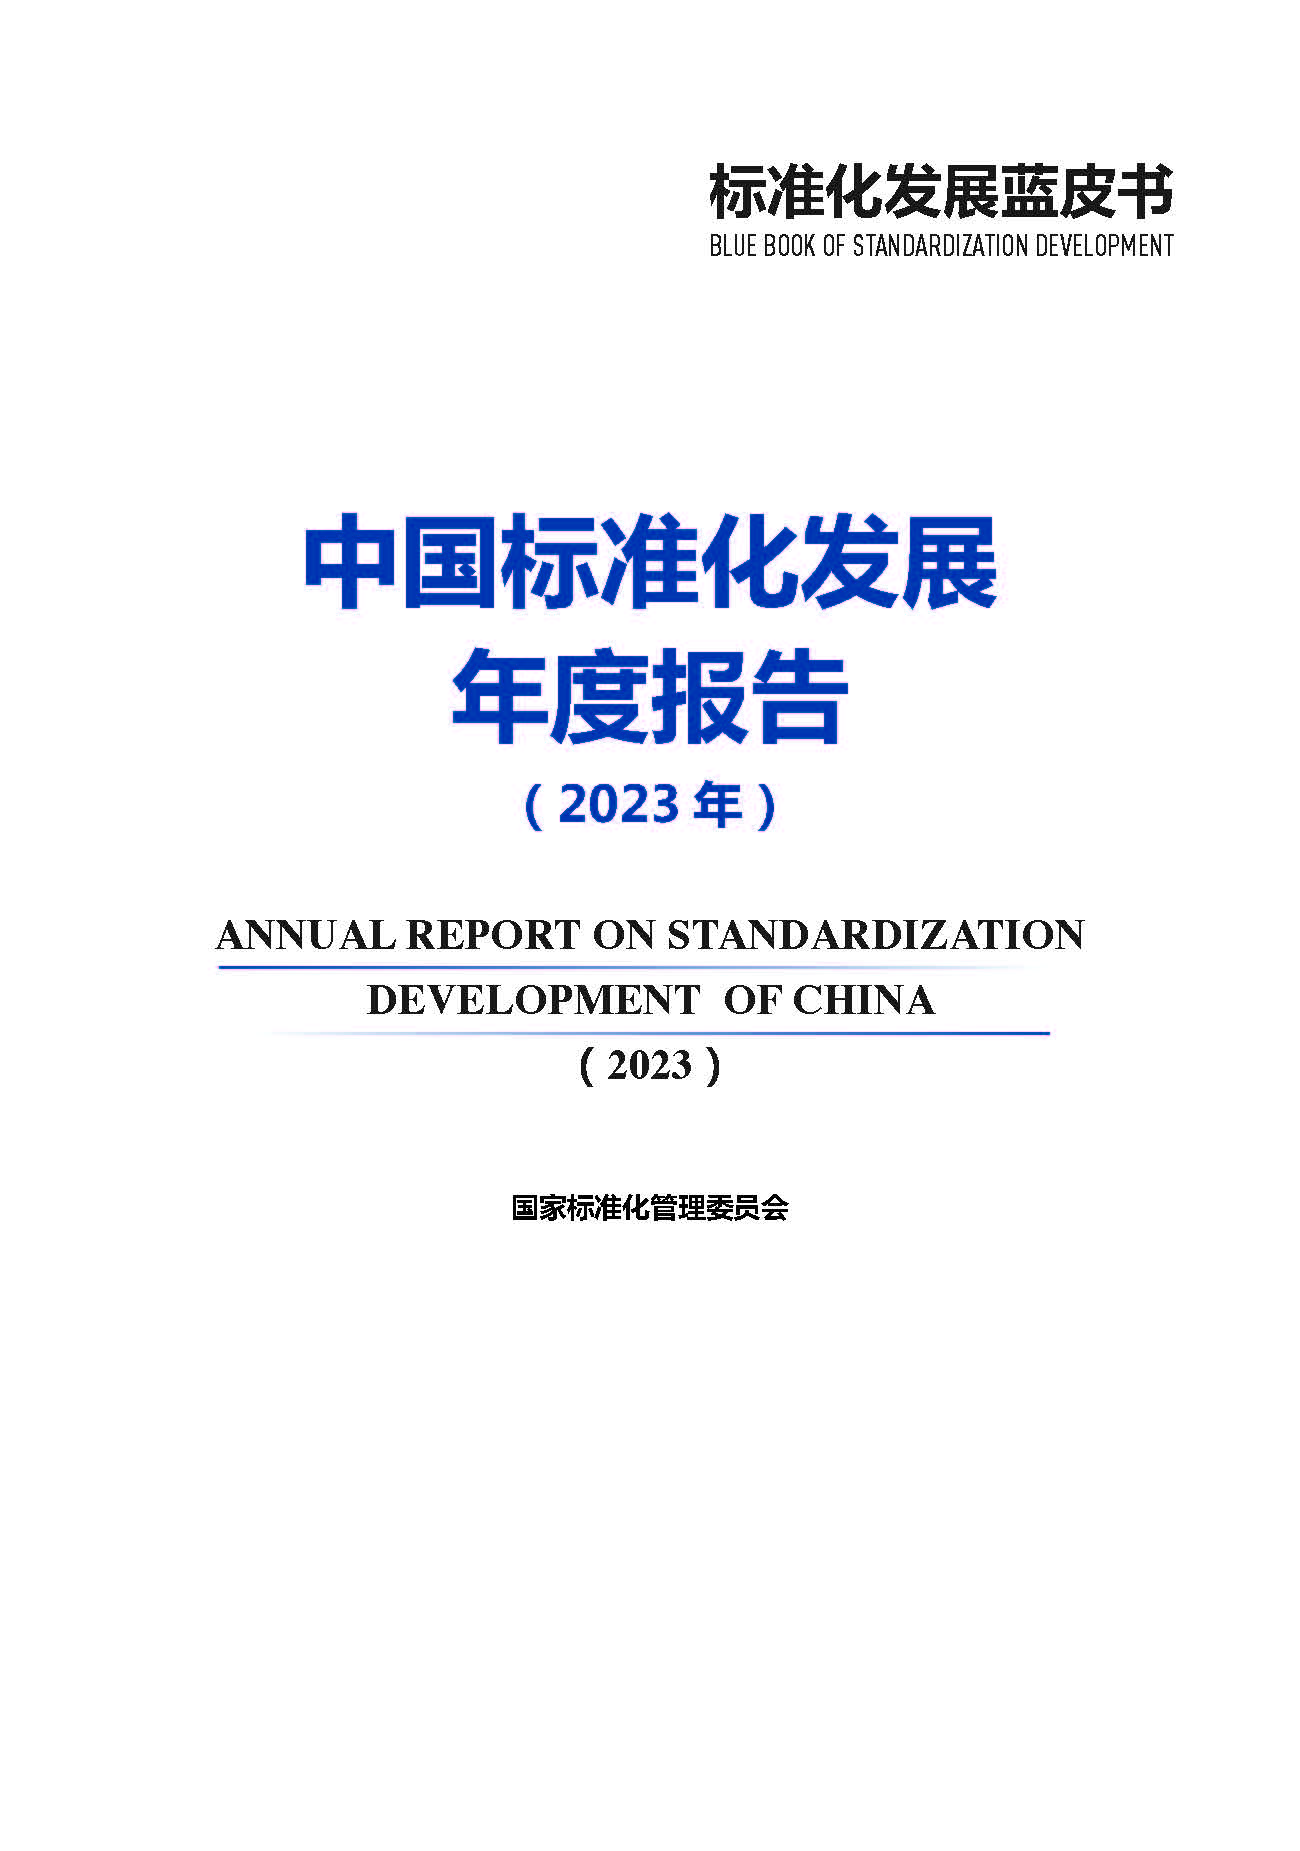 《中国标准化发展年度报告（2023年）》_页面_02.jpg